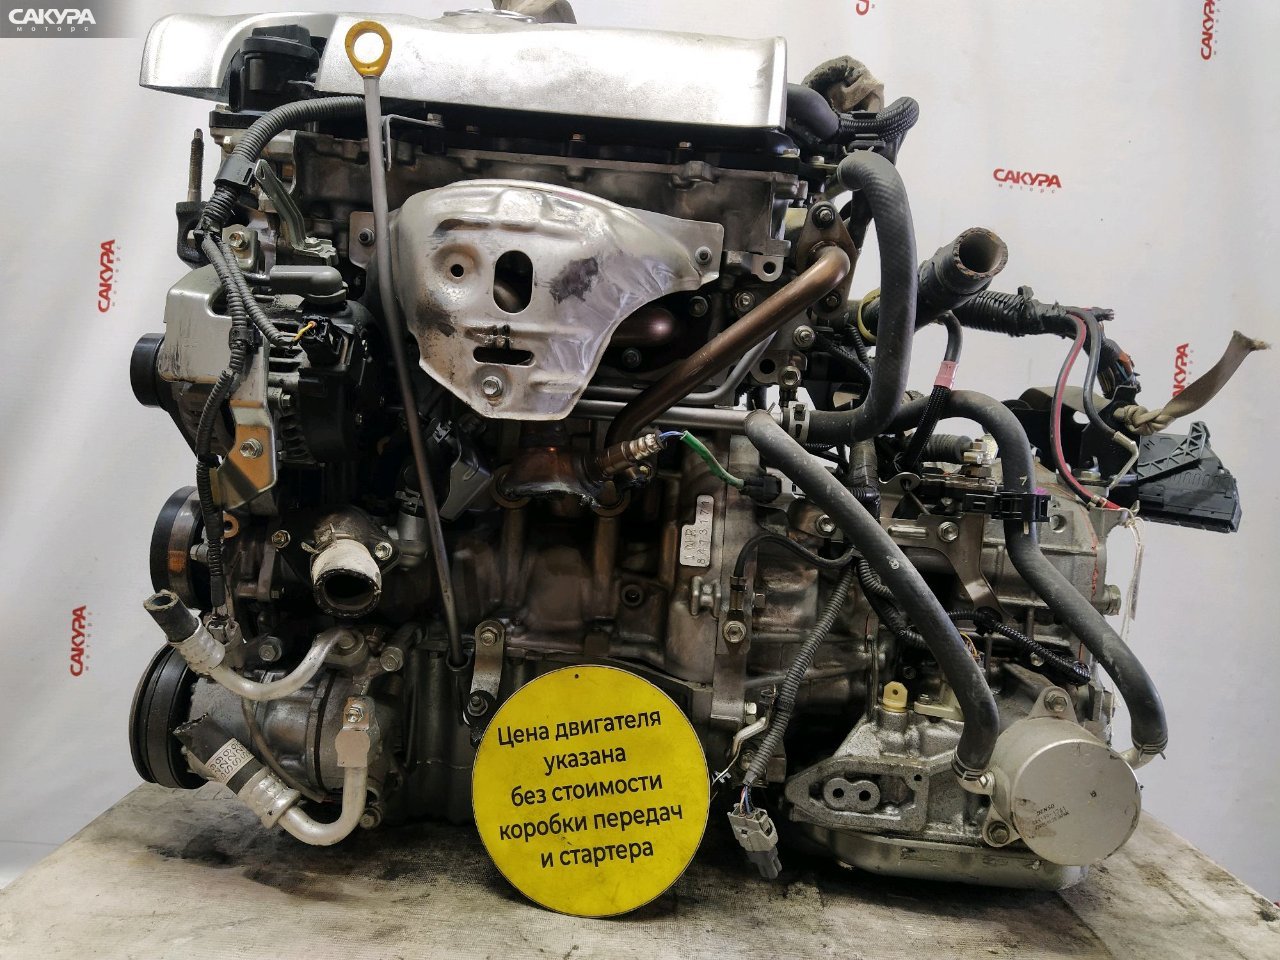 Двигатель Toyota Ractis NSP120 1NR-FKE: купить в Сакура Красноярск.